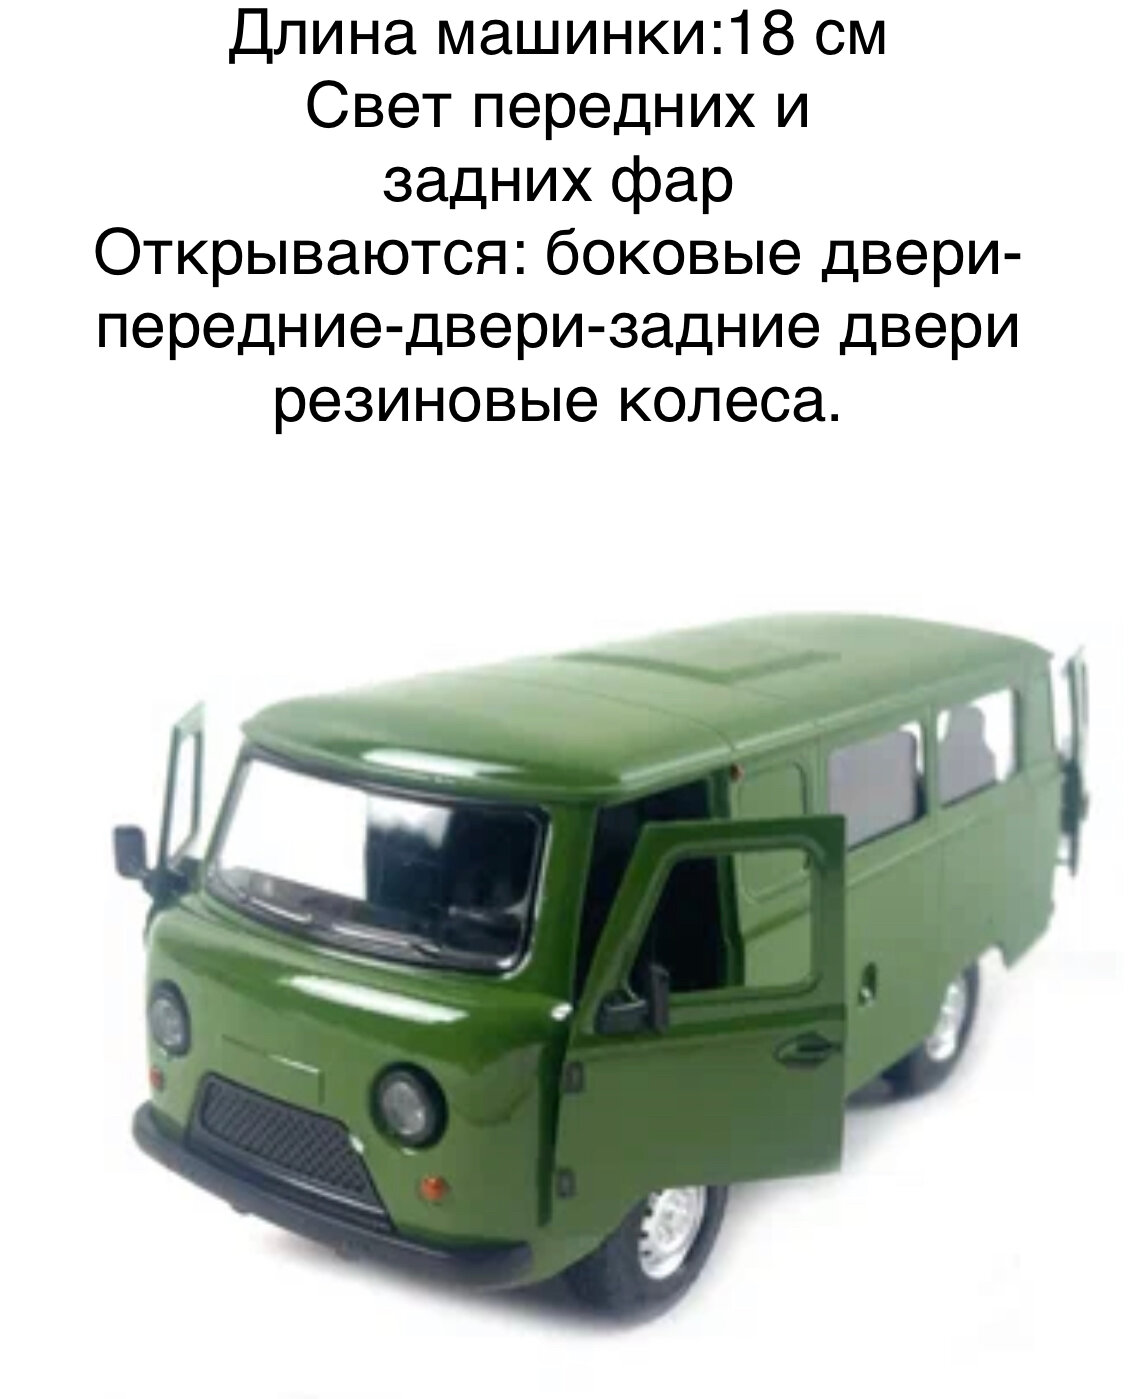 Микроавтобус Уаз 452 "Буханка" со светом и звуком 18 см